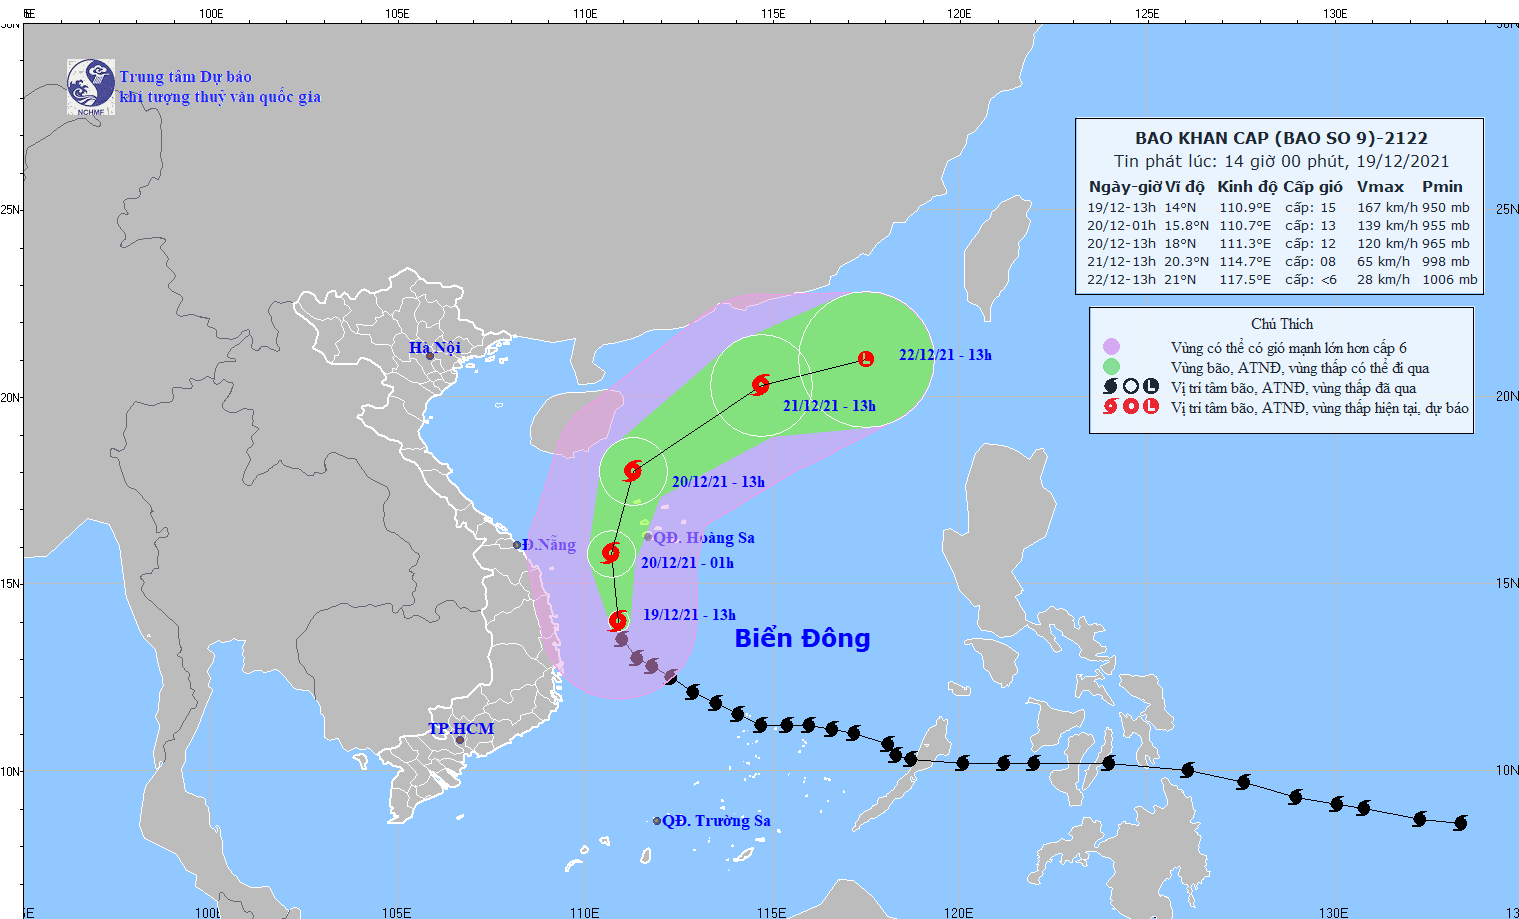 Siêu bão RAI giảm đi một cấp, từ Quảng Ngãi- Phú Yên gió giật cấp 6